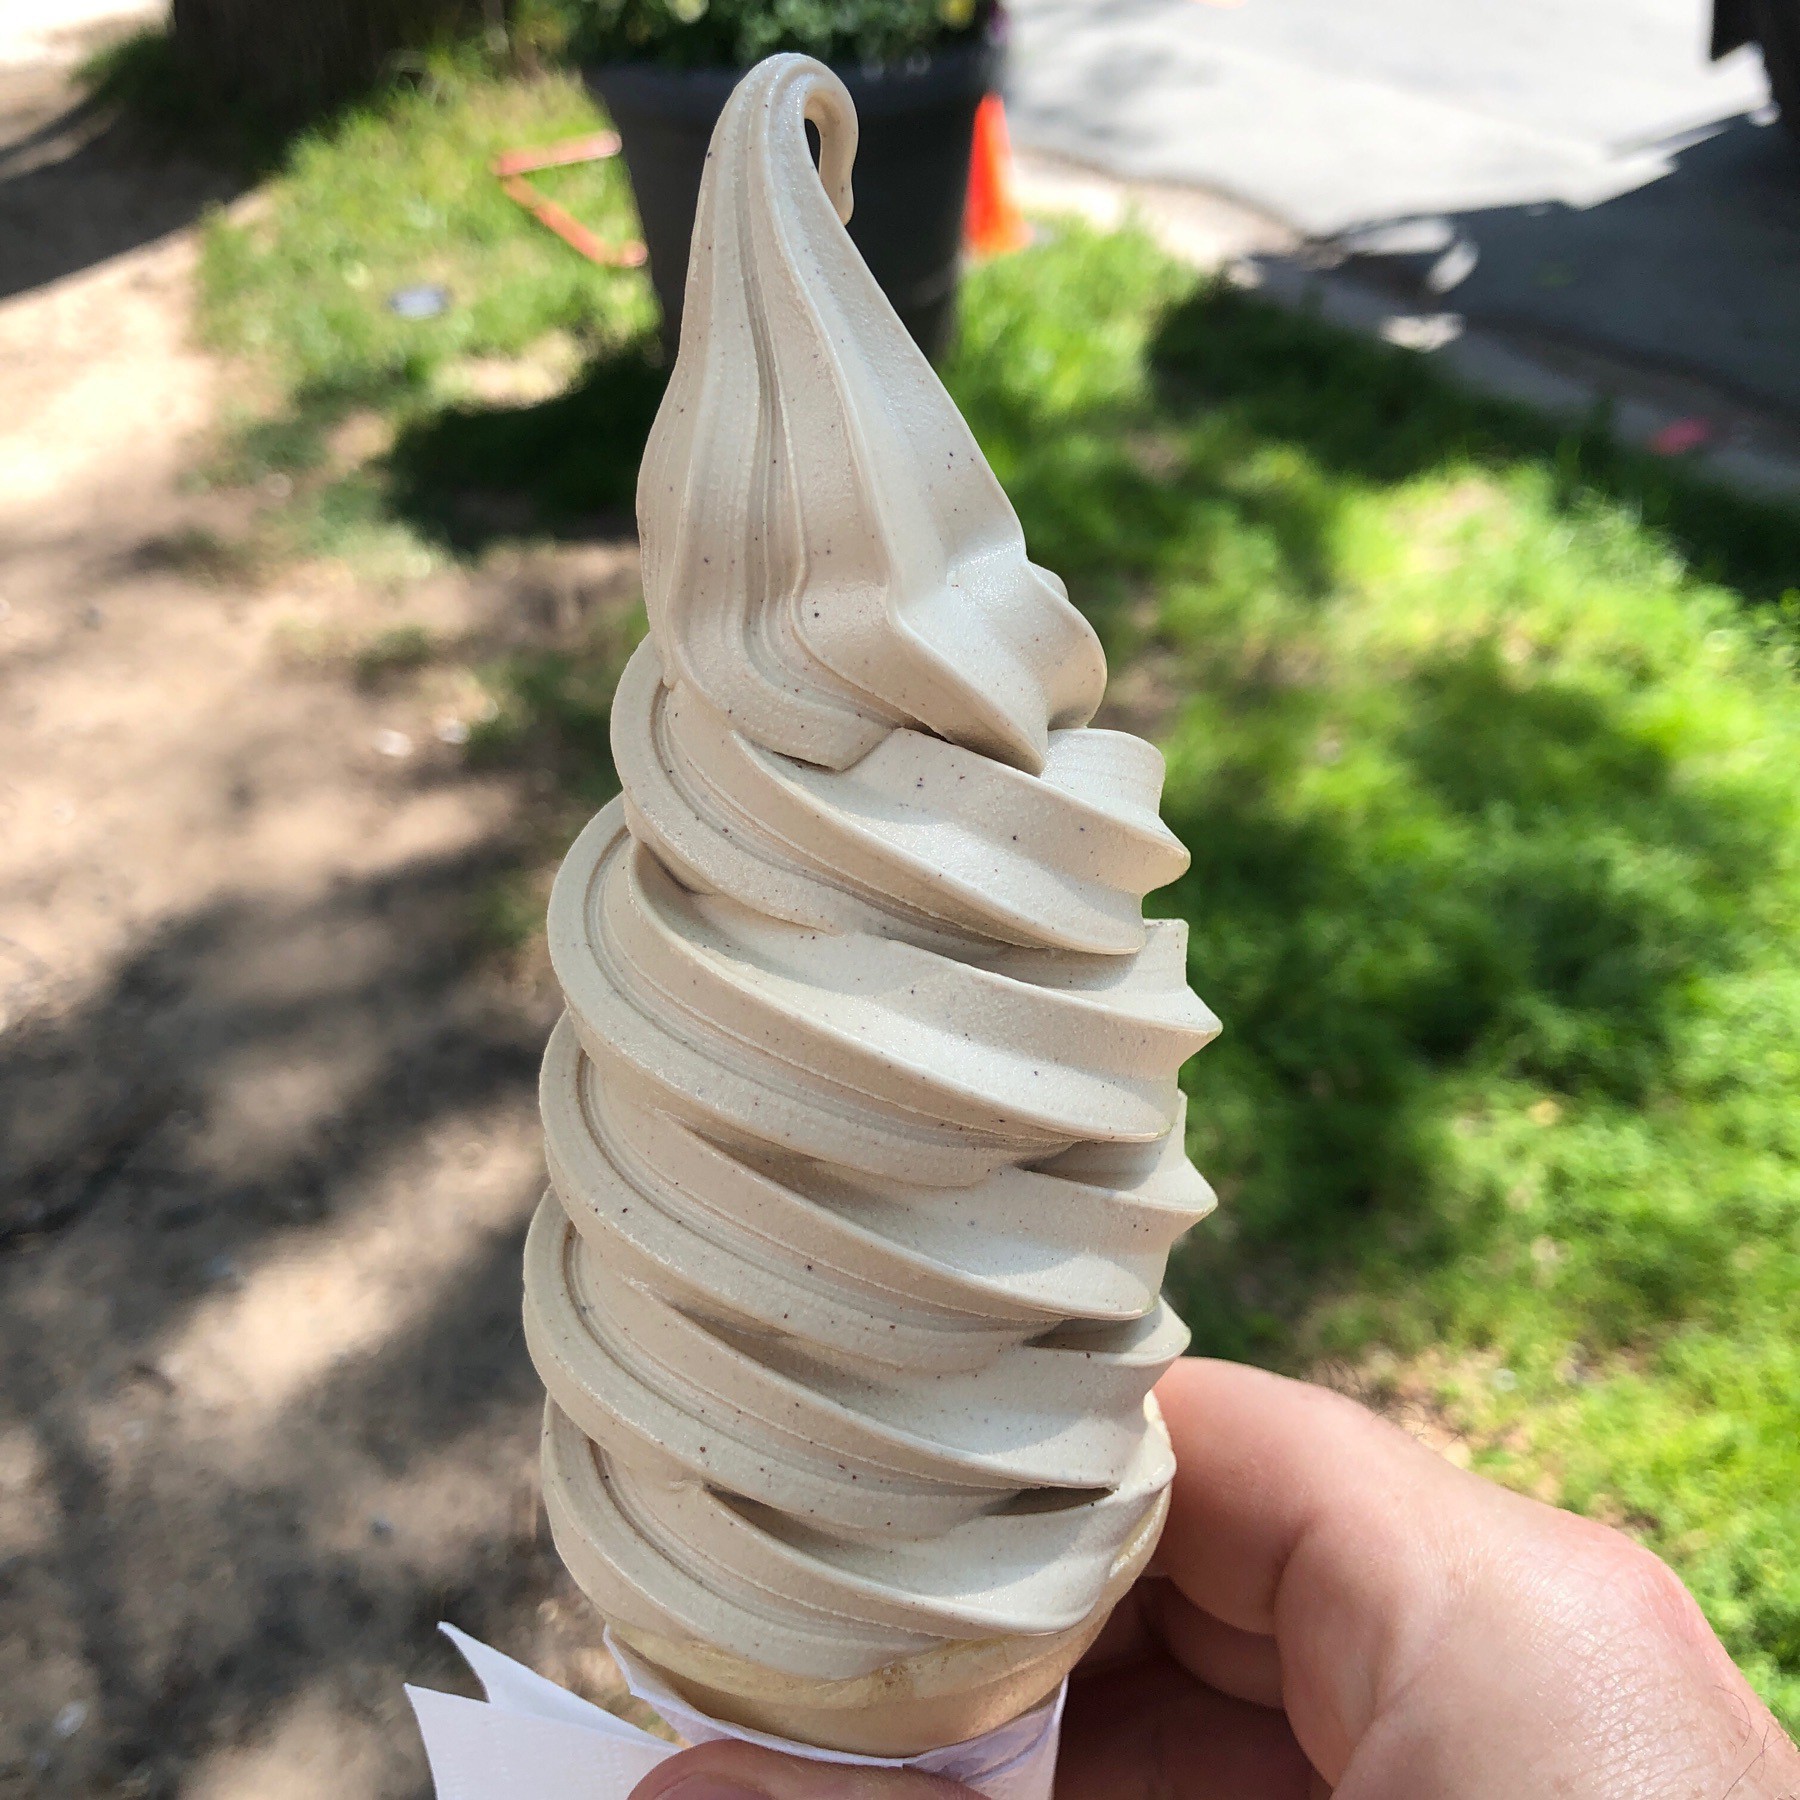 Soft serve ice cream in cone